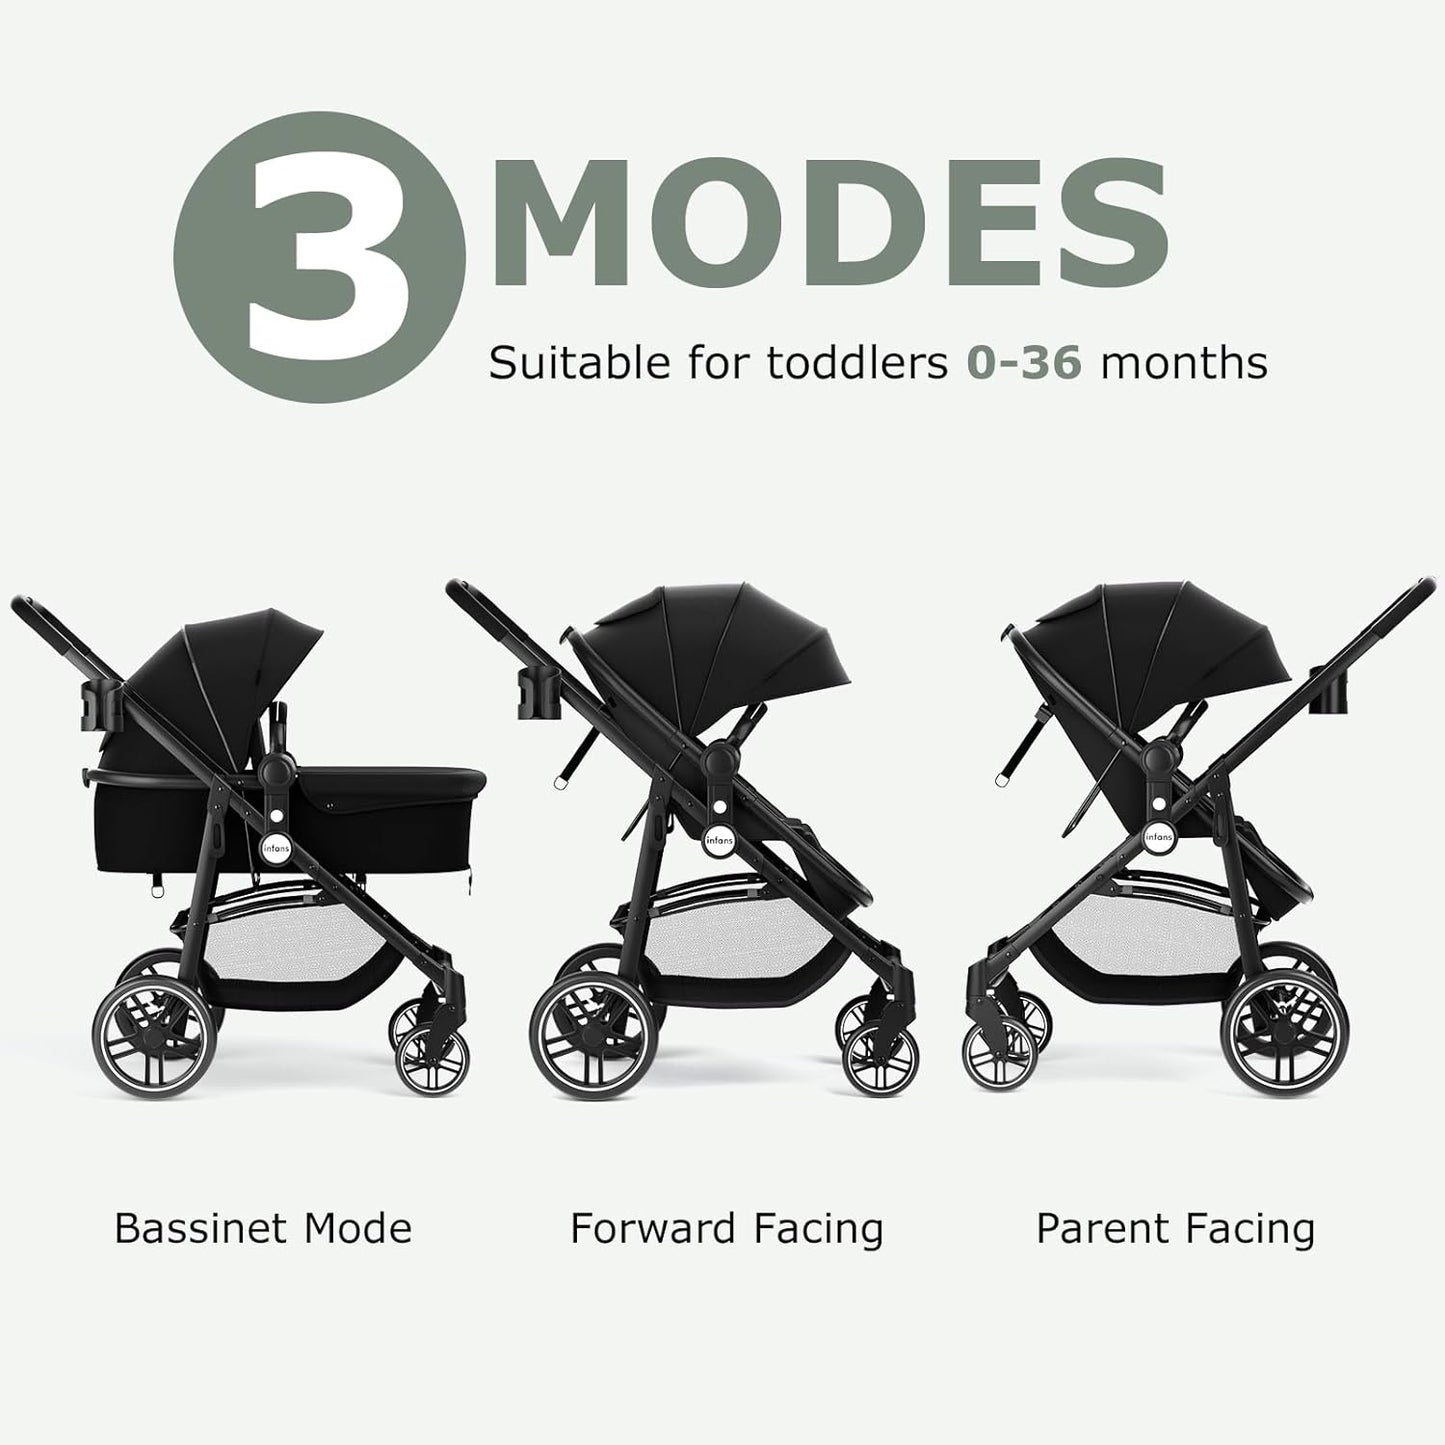 2 in 1 Baby Stroller, High Landscape Infant Stroller & Reversible Bassinet Pram, Foldable Pushchair with Adjustable Canopy, Storage Basket, Cup Holder, Suspension Wheels (Black)